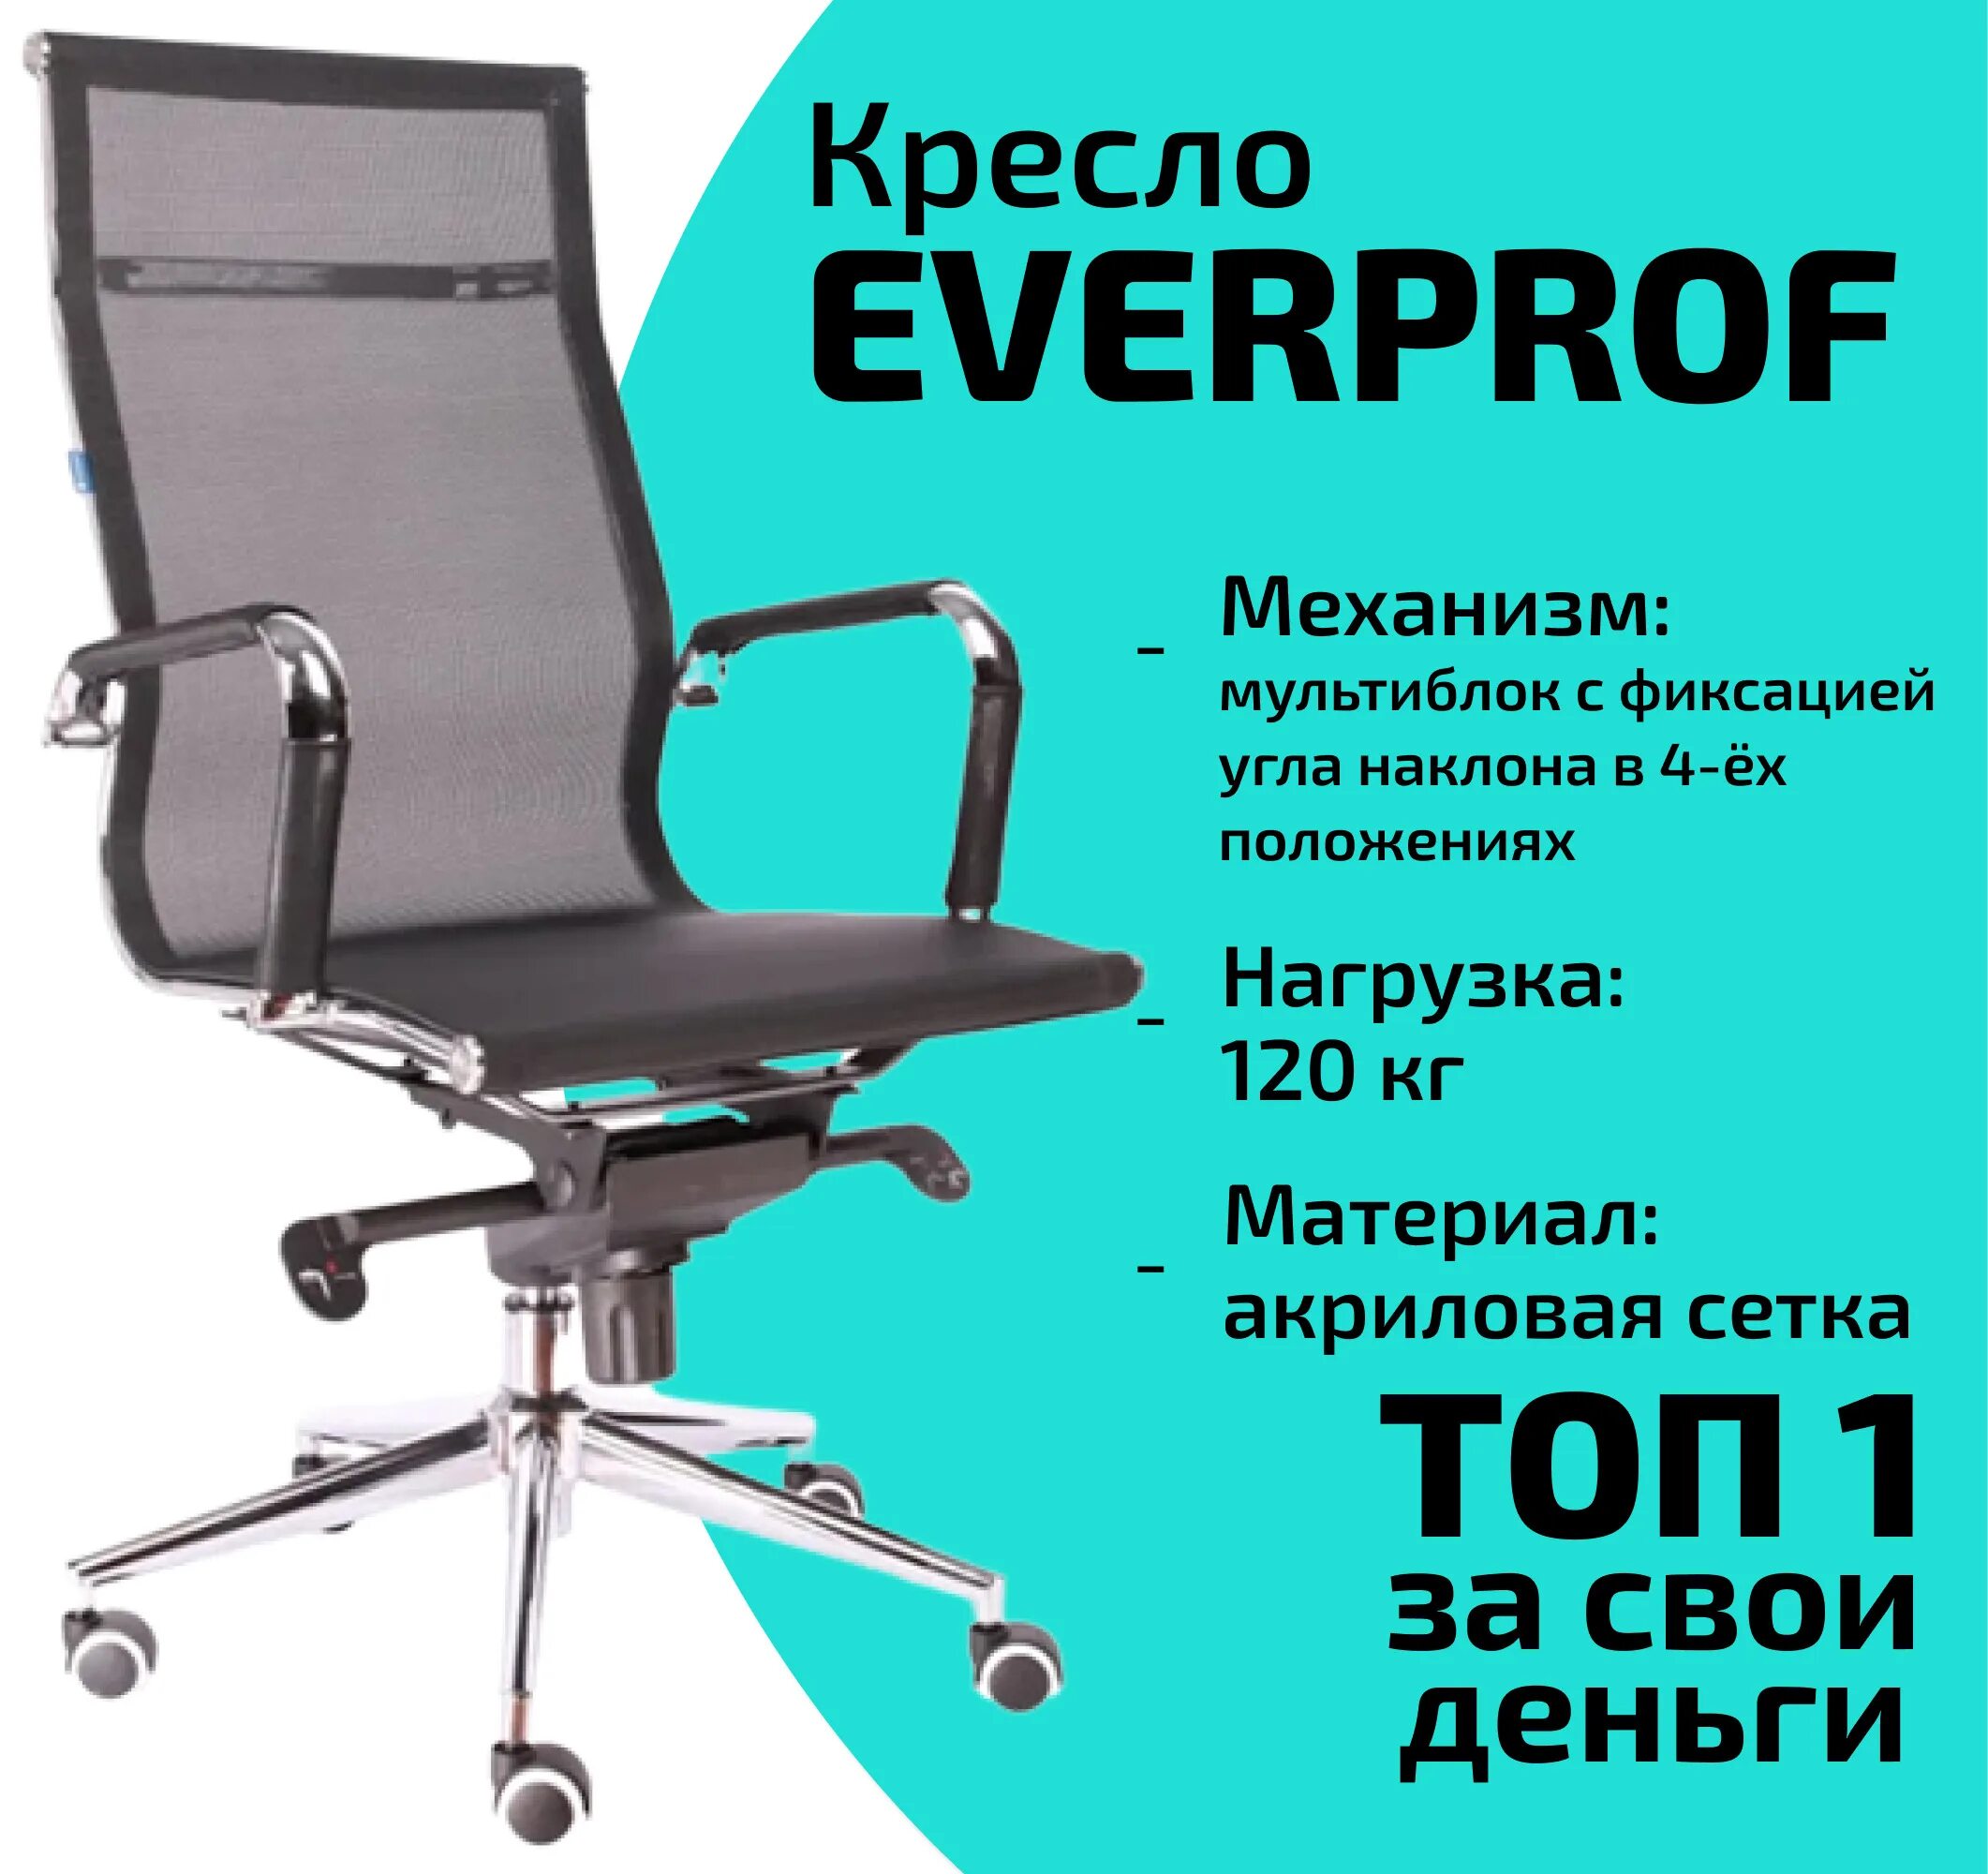 Комус кресла офисные. Кресло Everprof Ultra t сетка черный. Everprof кресло Everprof Polo s сетка черный. Кресло Everprof Opera m сетка серый. Кресло Everprof Ep-708 сетка черный.